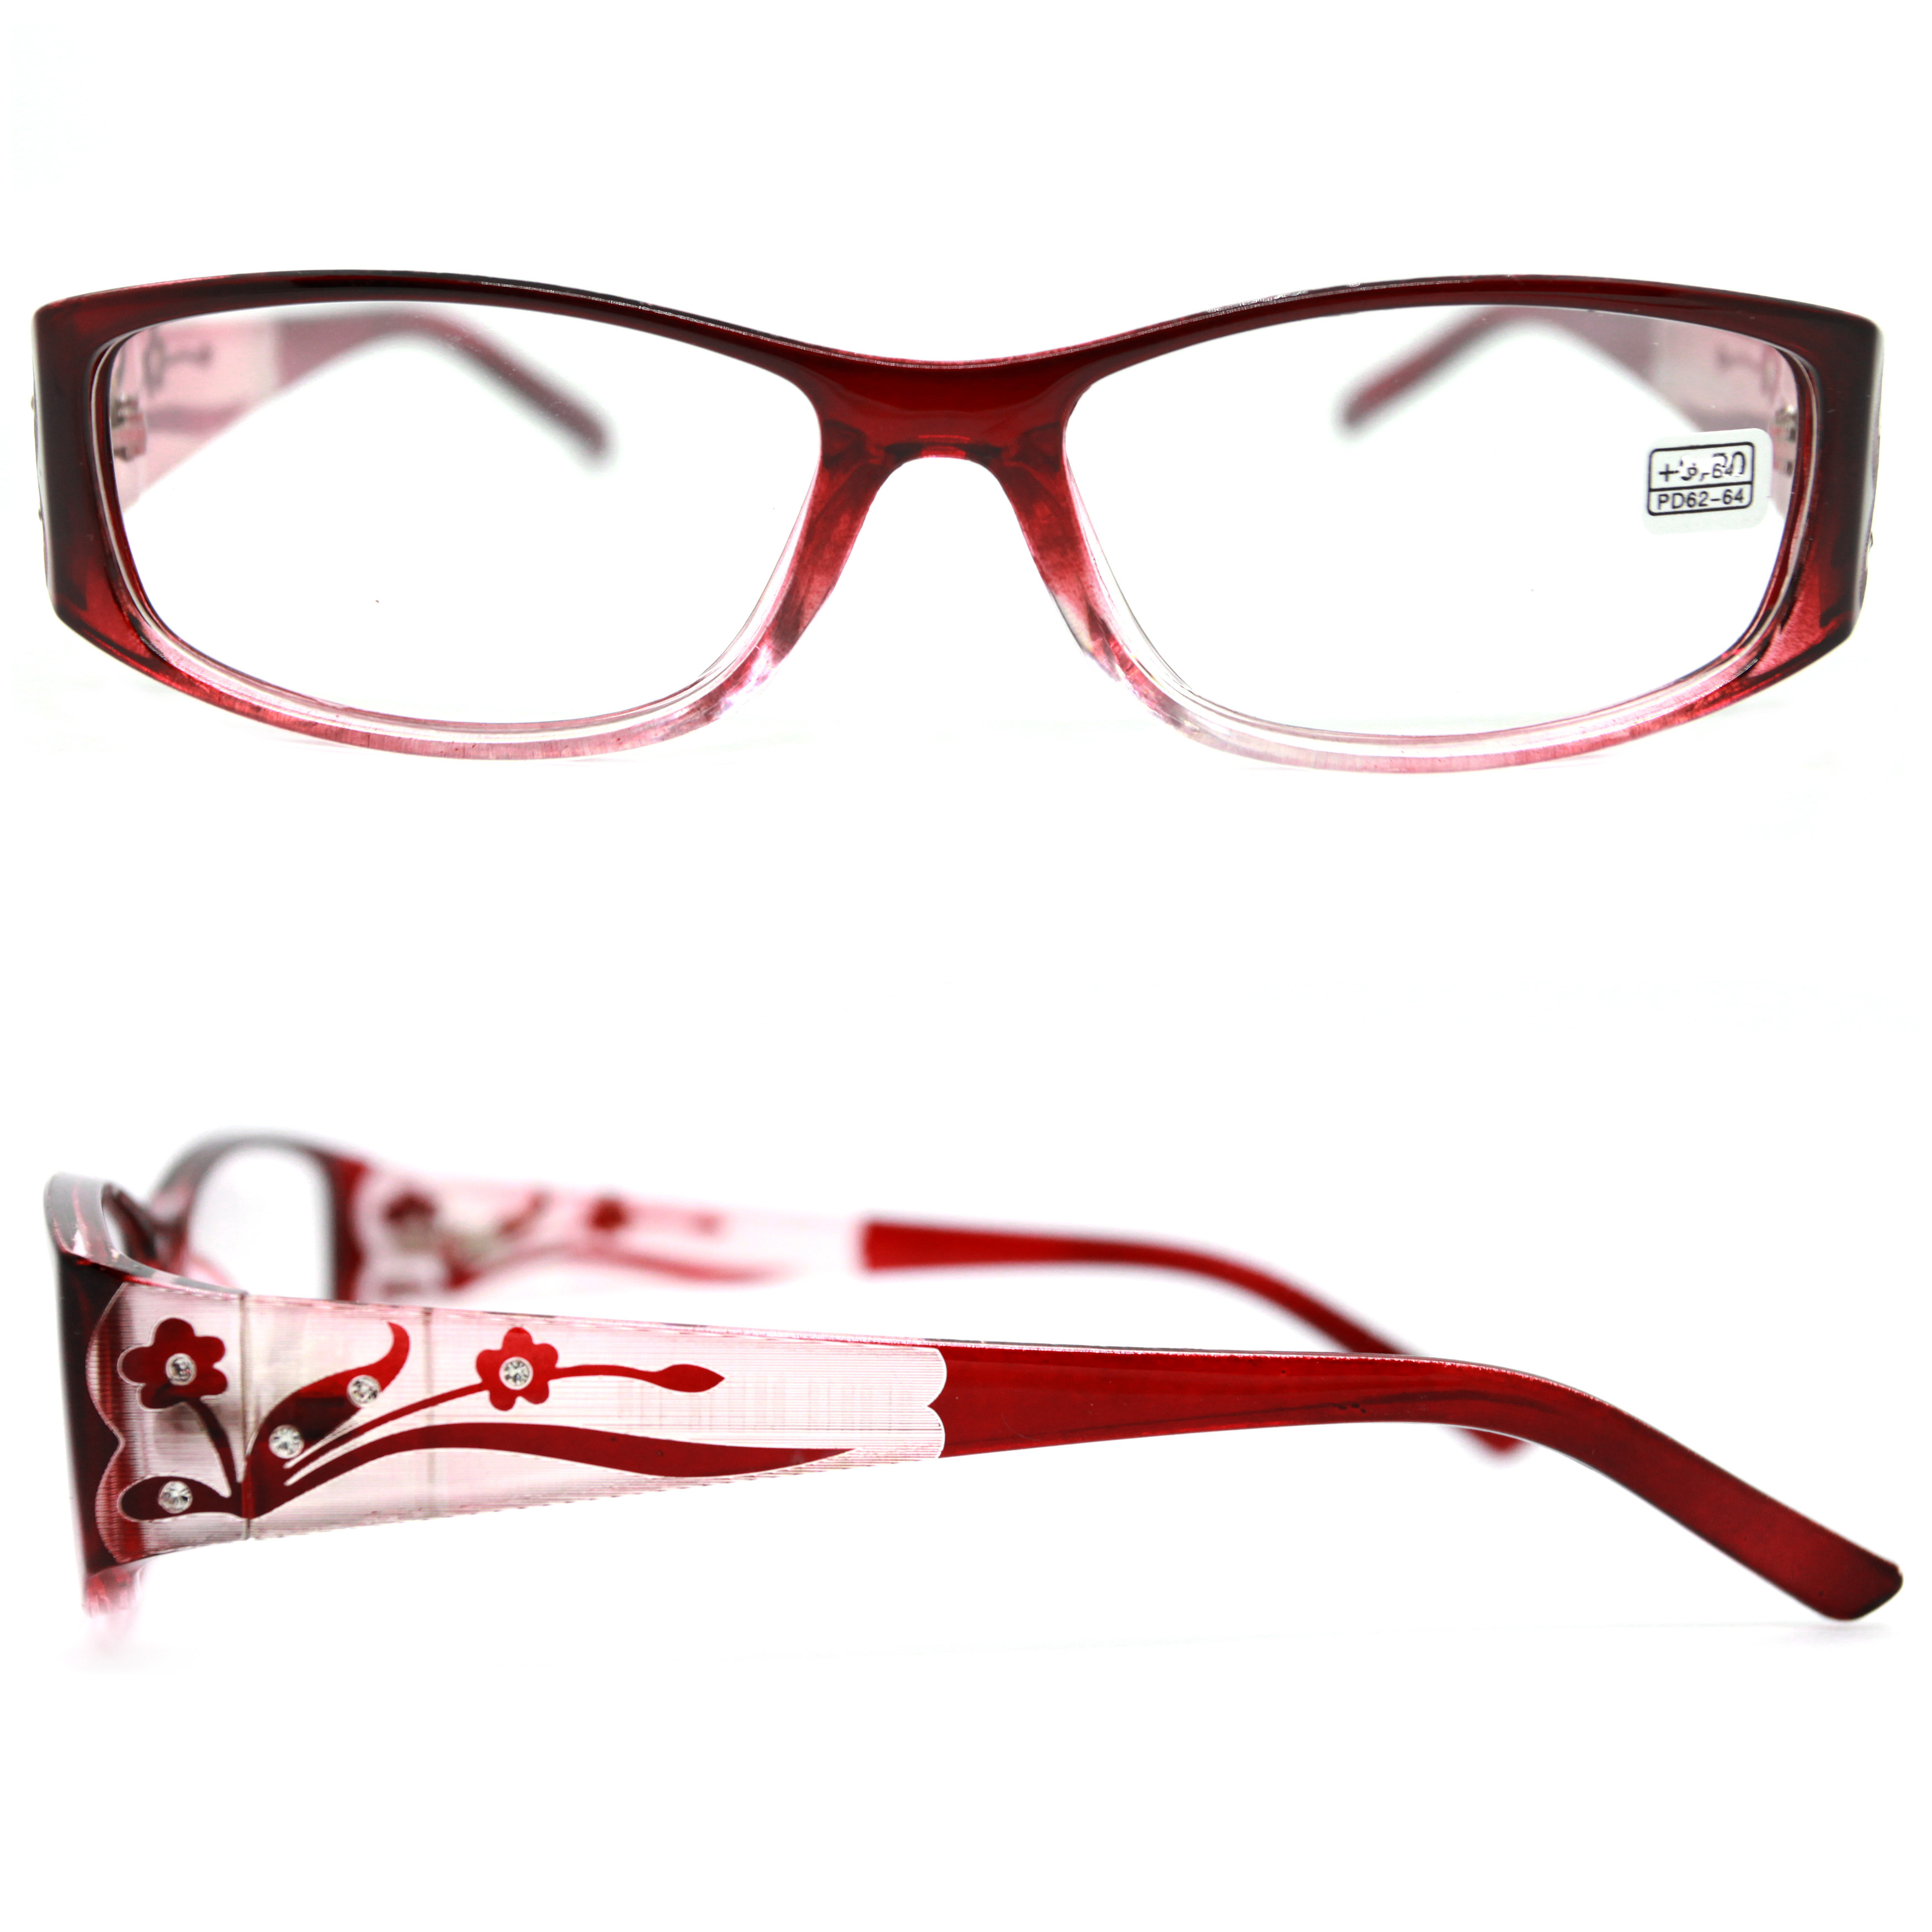 Готовые очки ВОСТОК 6614 +1,25, для чтения, бордовый, РЦ 62-64